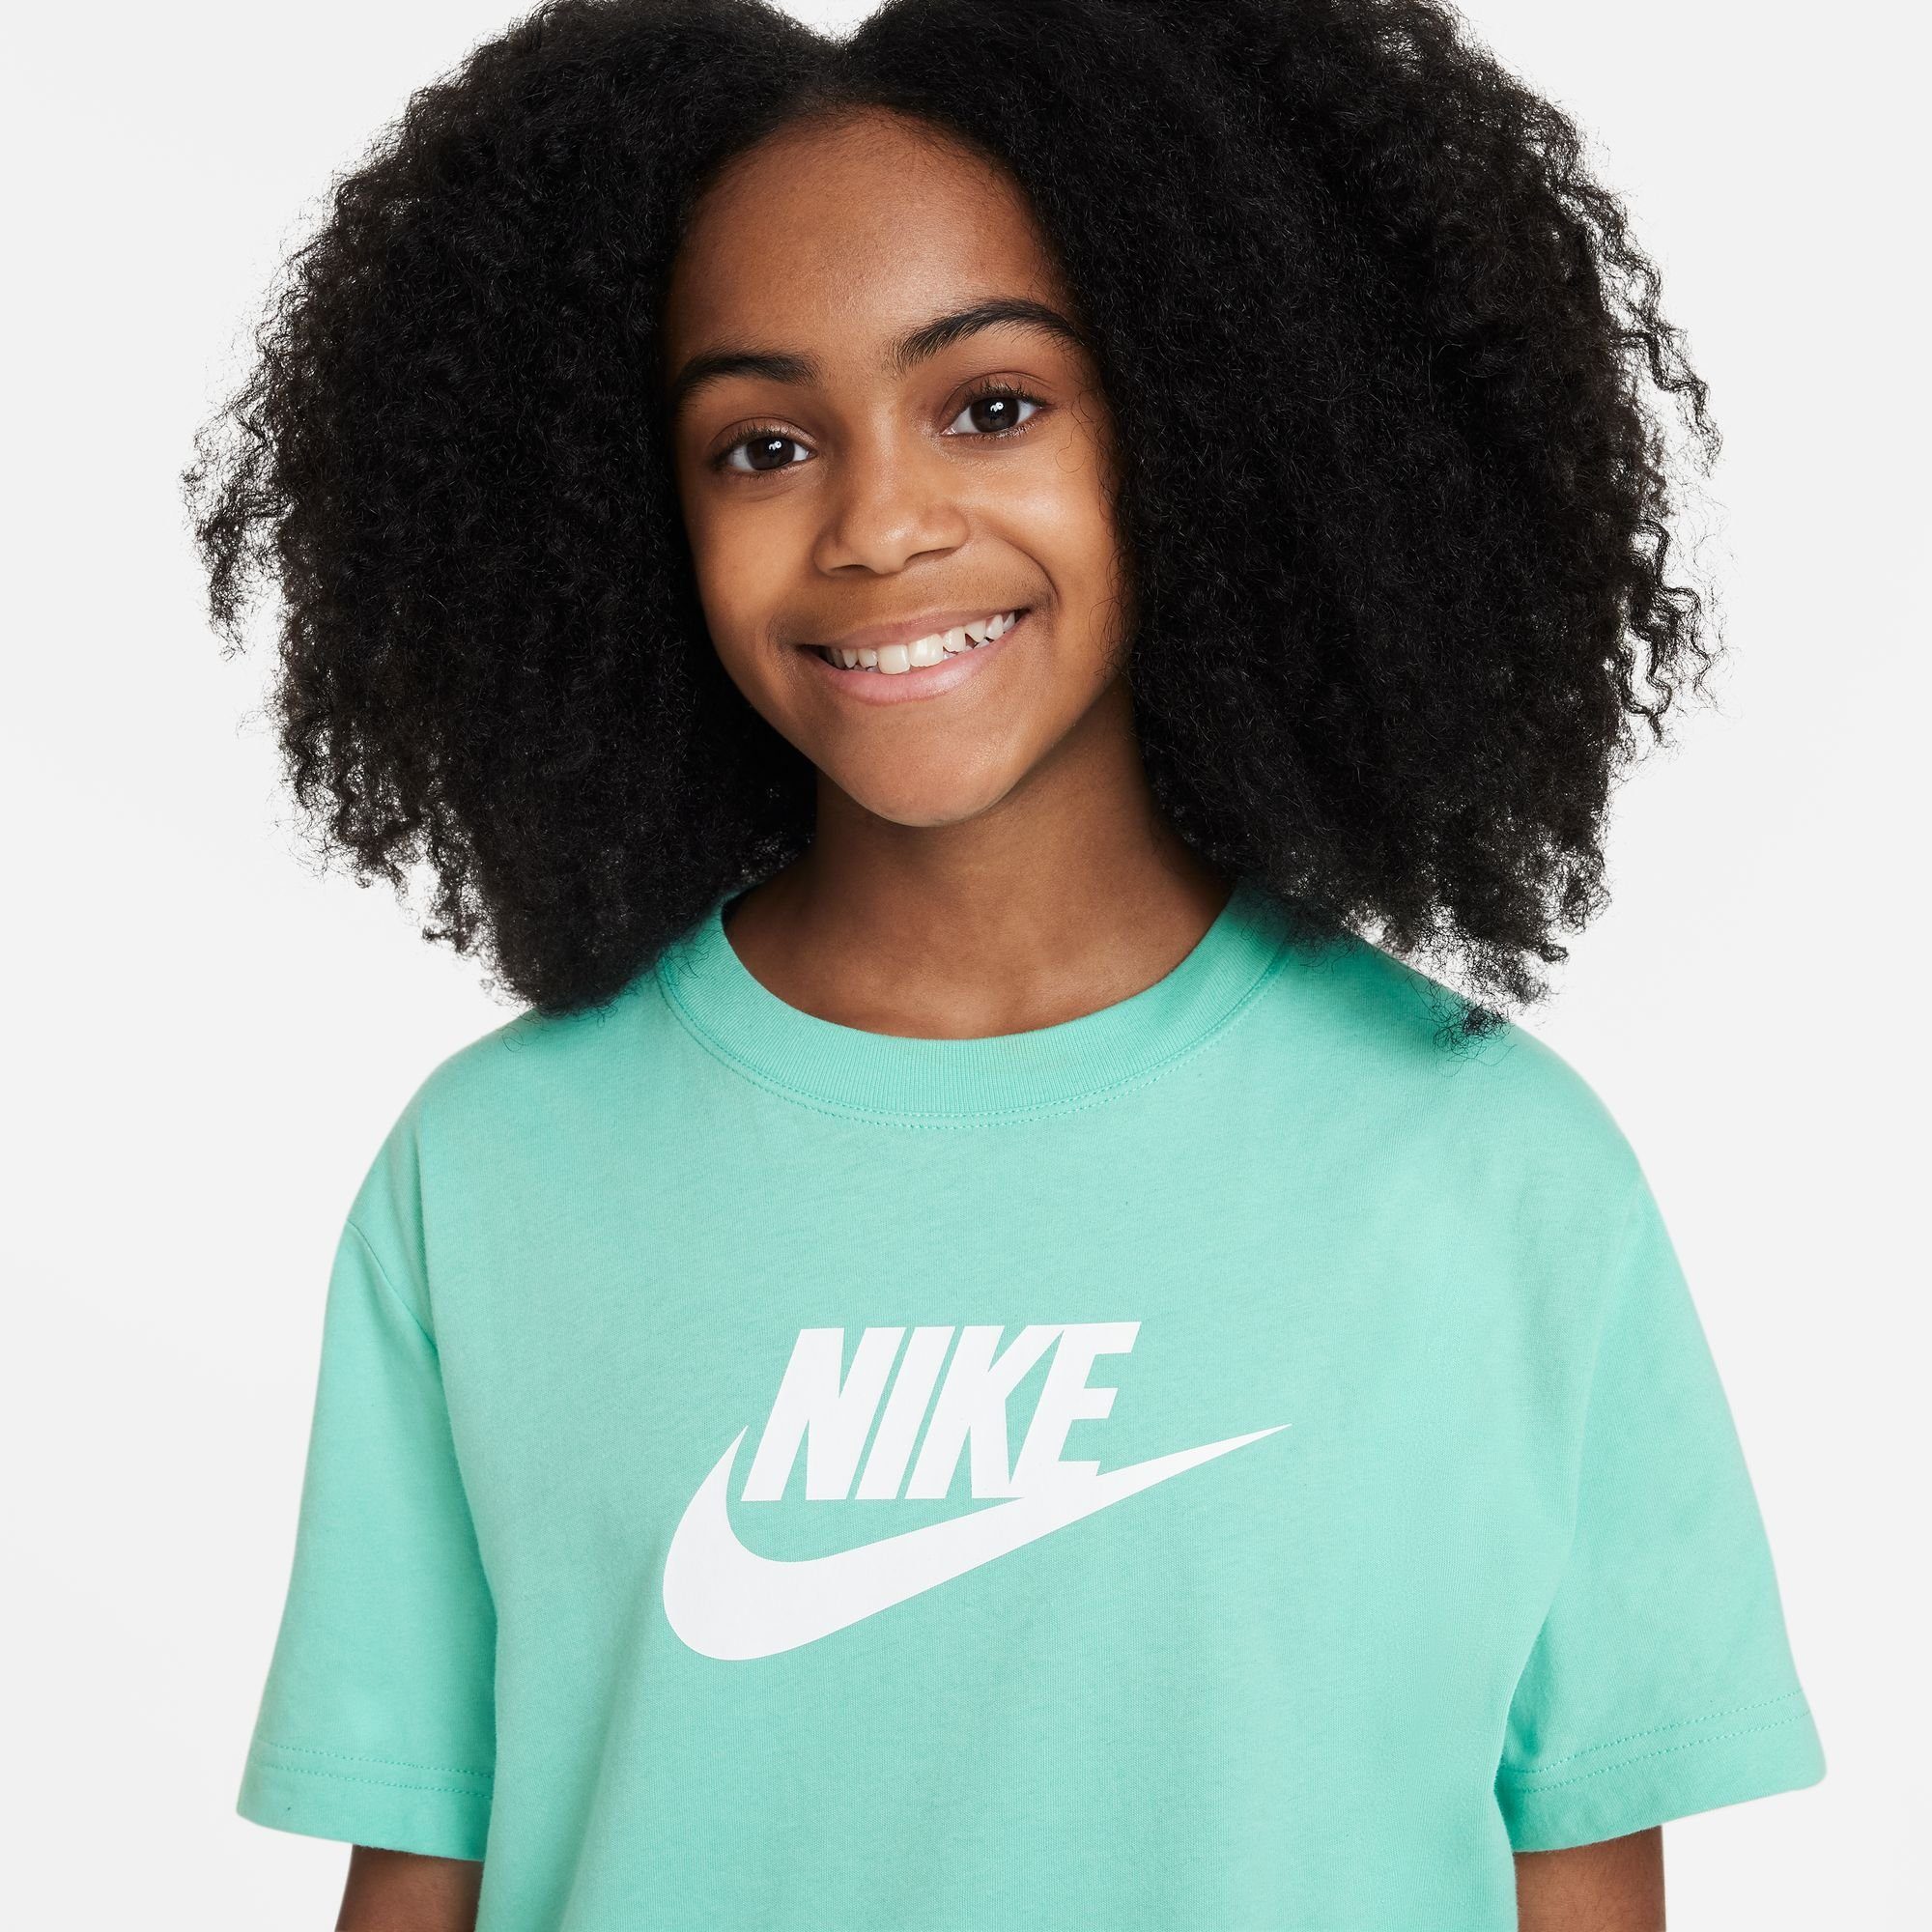 RISE (GIRLS) T-SHIRT Sportswear T-Shirt EMERALD KIDS' BIG Nike